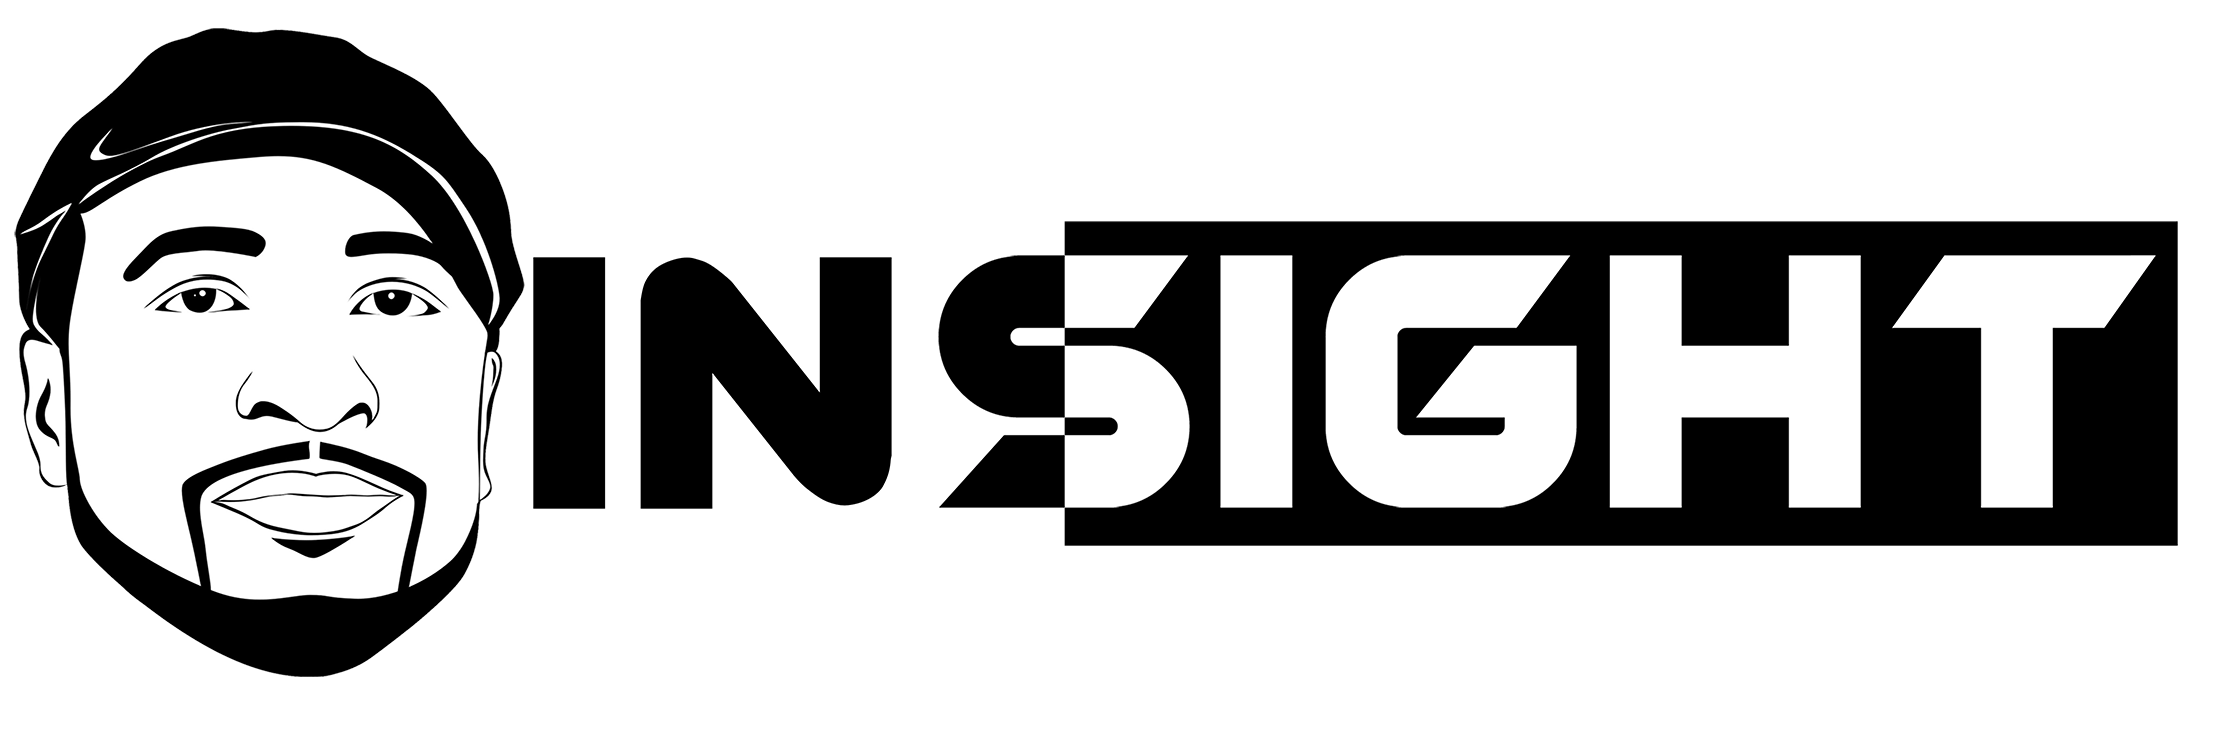 Insight Logo - Insight The Truncator – MC, DJ, Producer and Software Developer